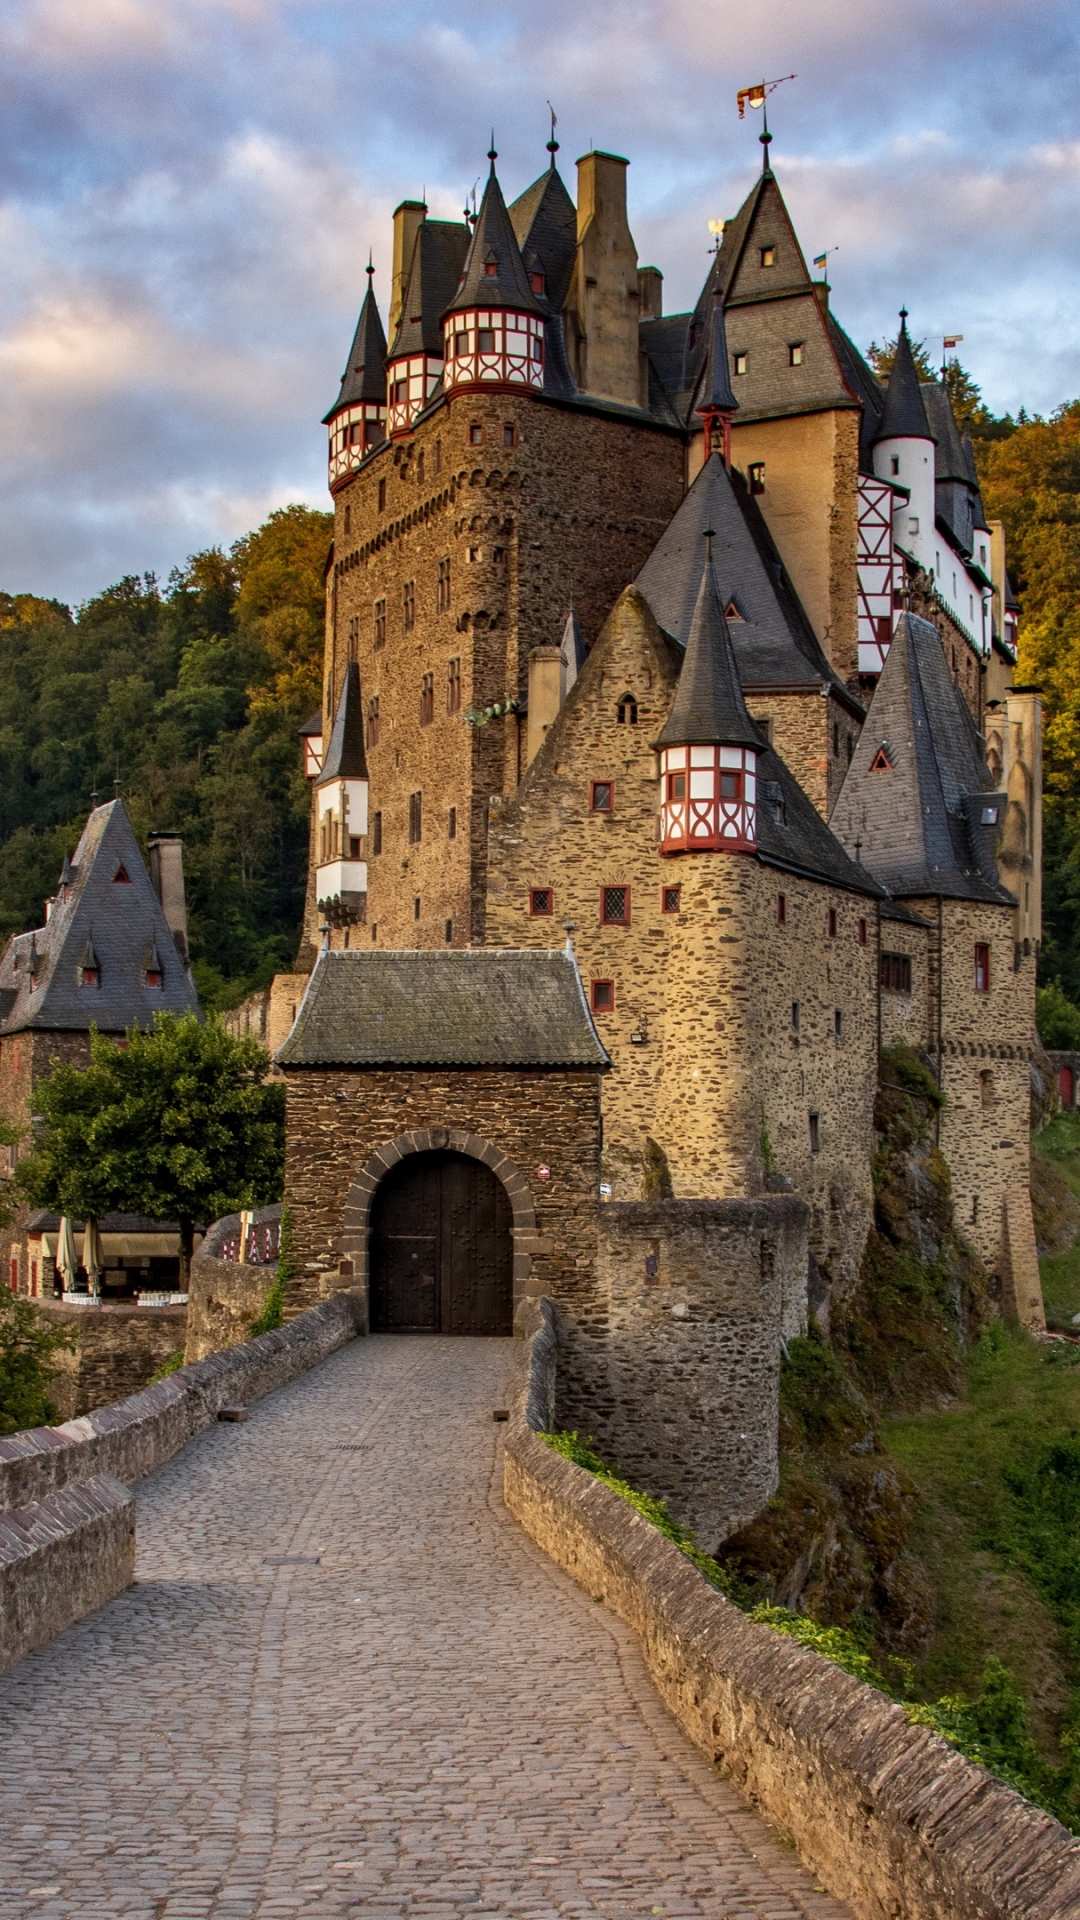 Rhineland-Palatinate, Wierschem, Medieval castle